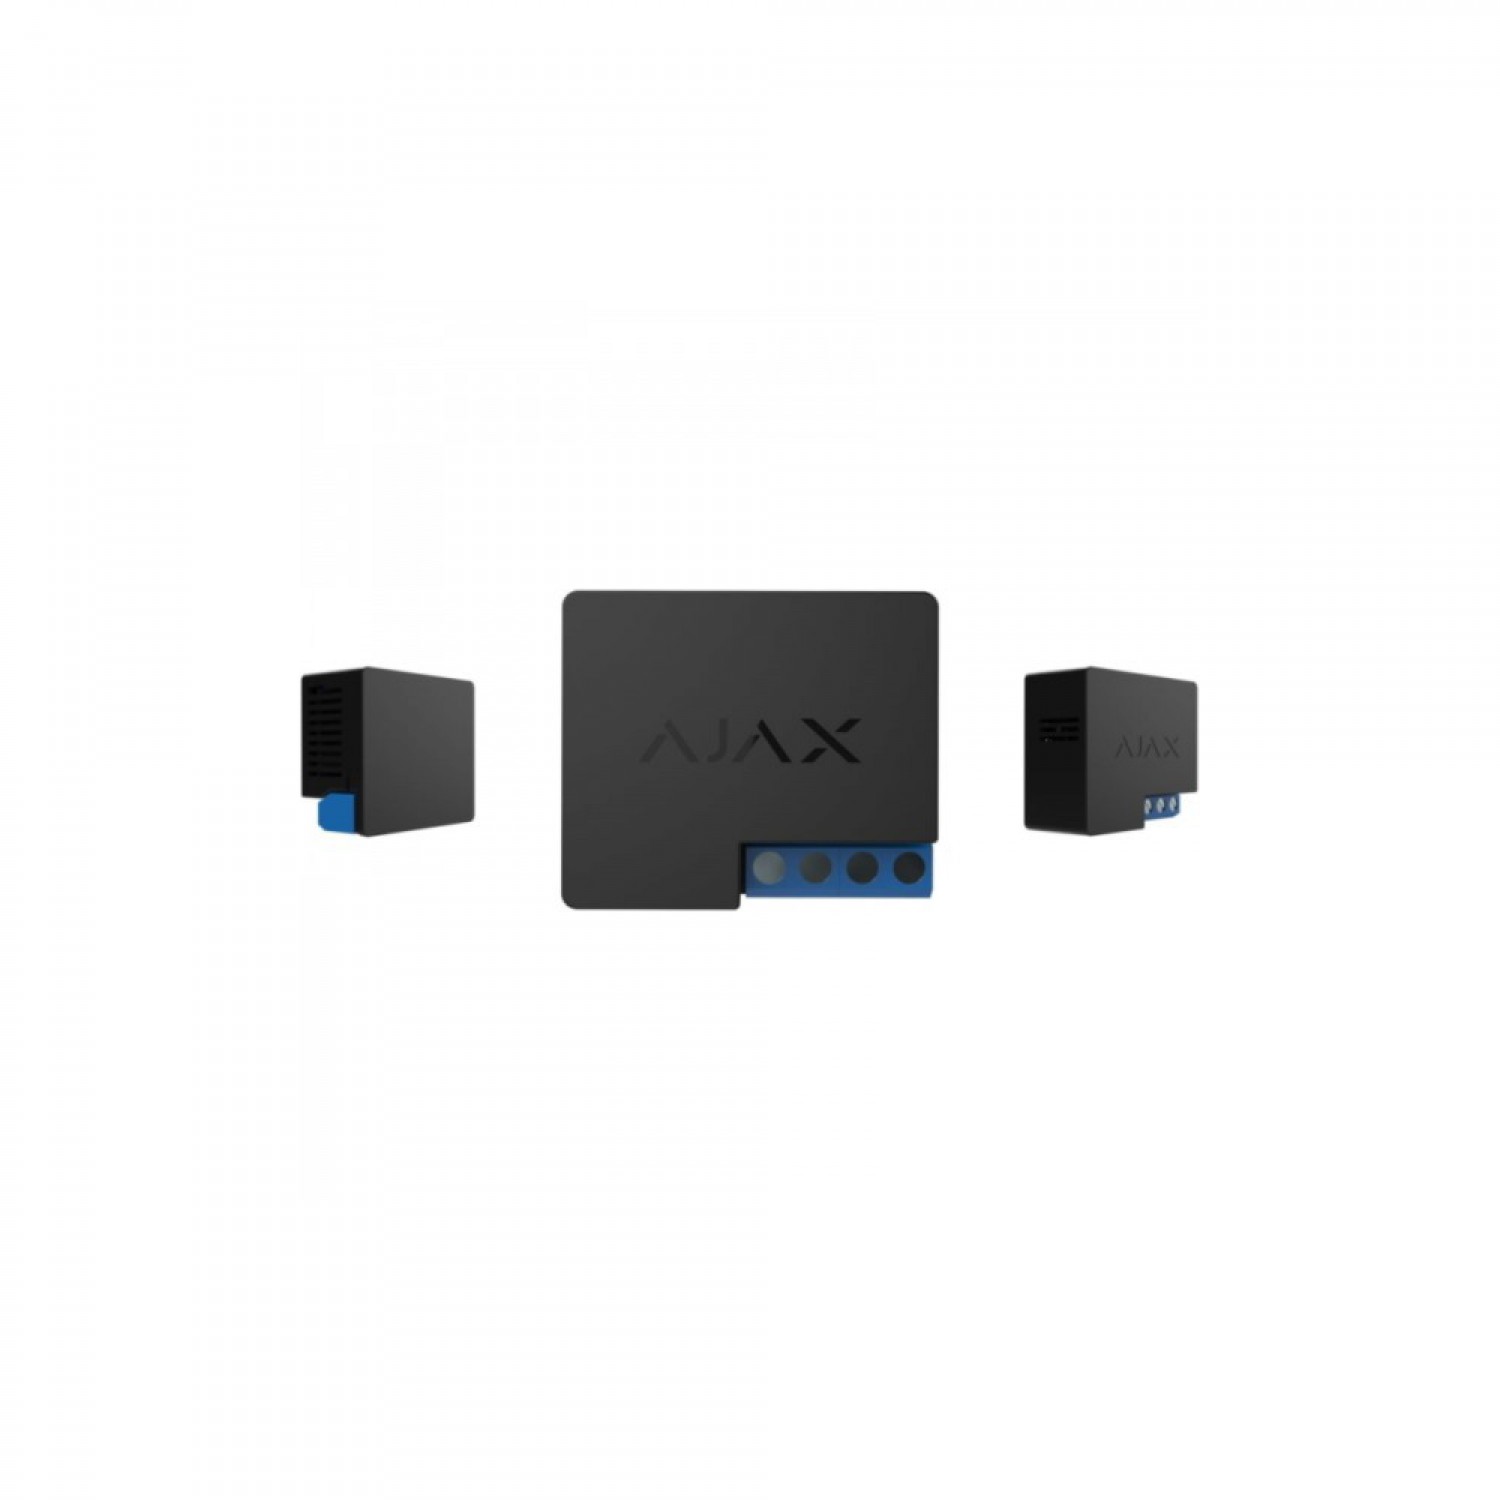 Компонент Ajax 6433 Relay ЕU контроллер дистанционного управления 10019